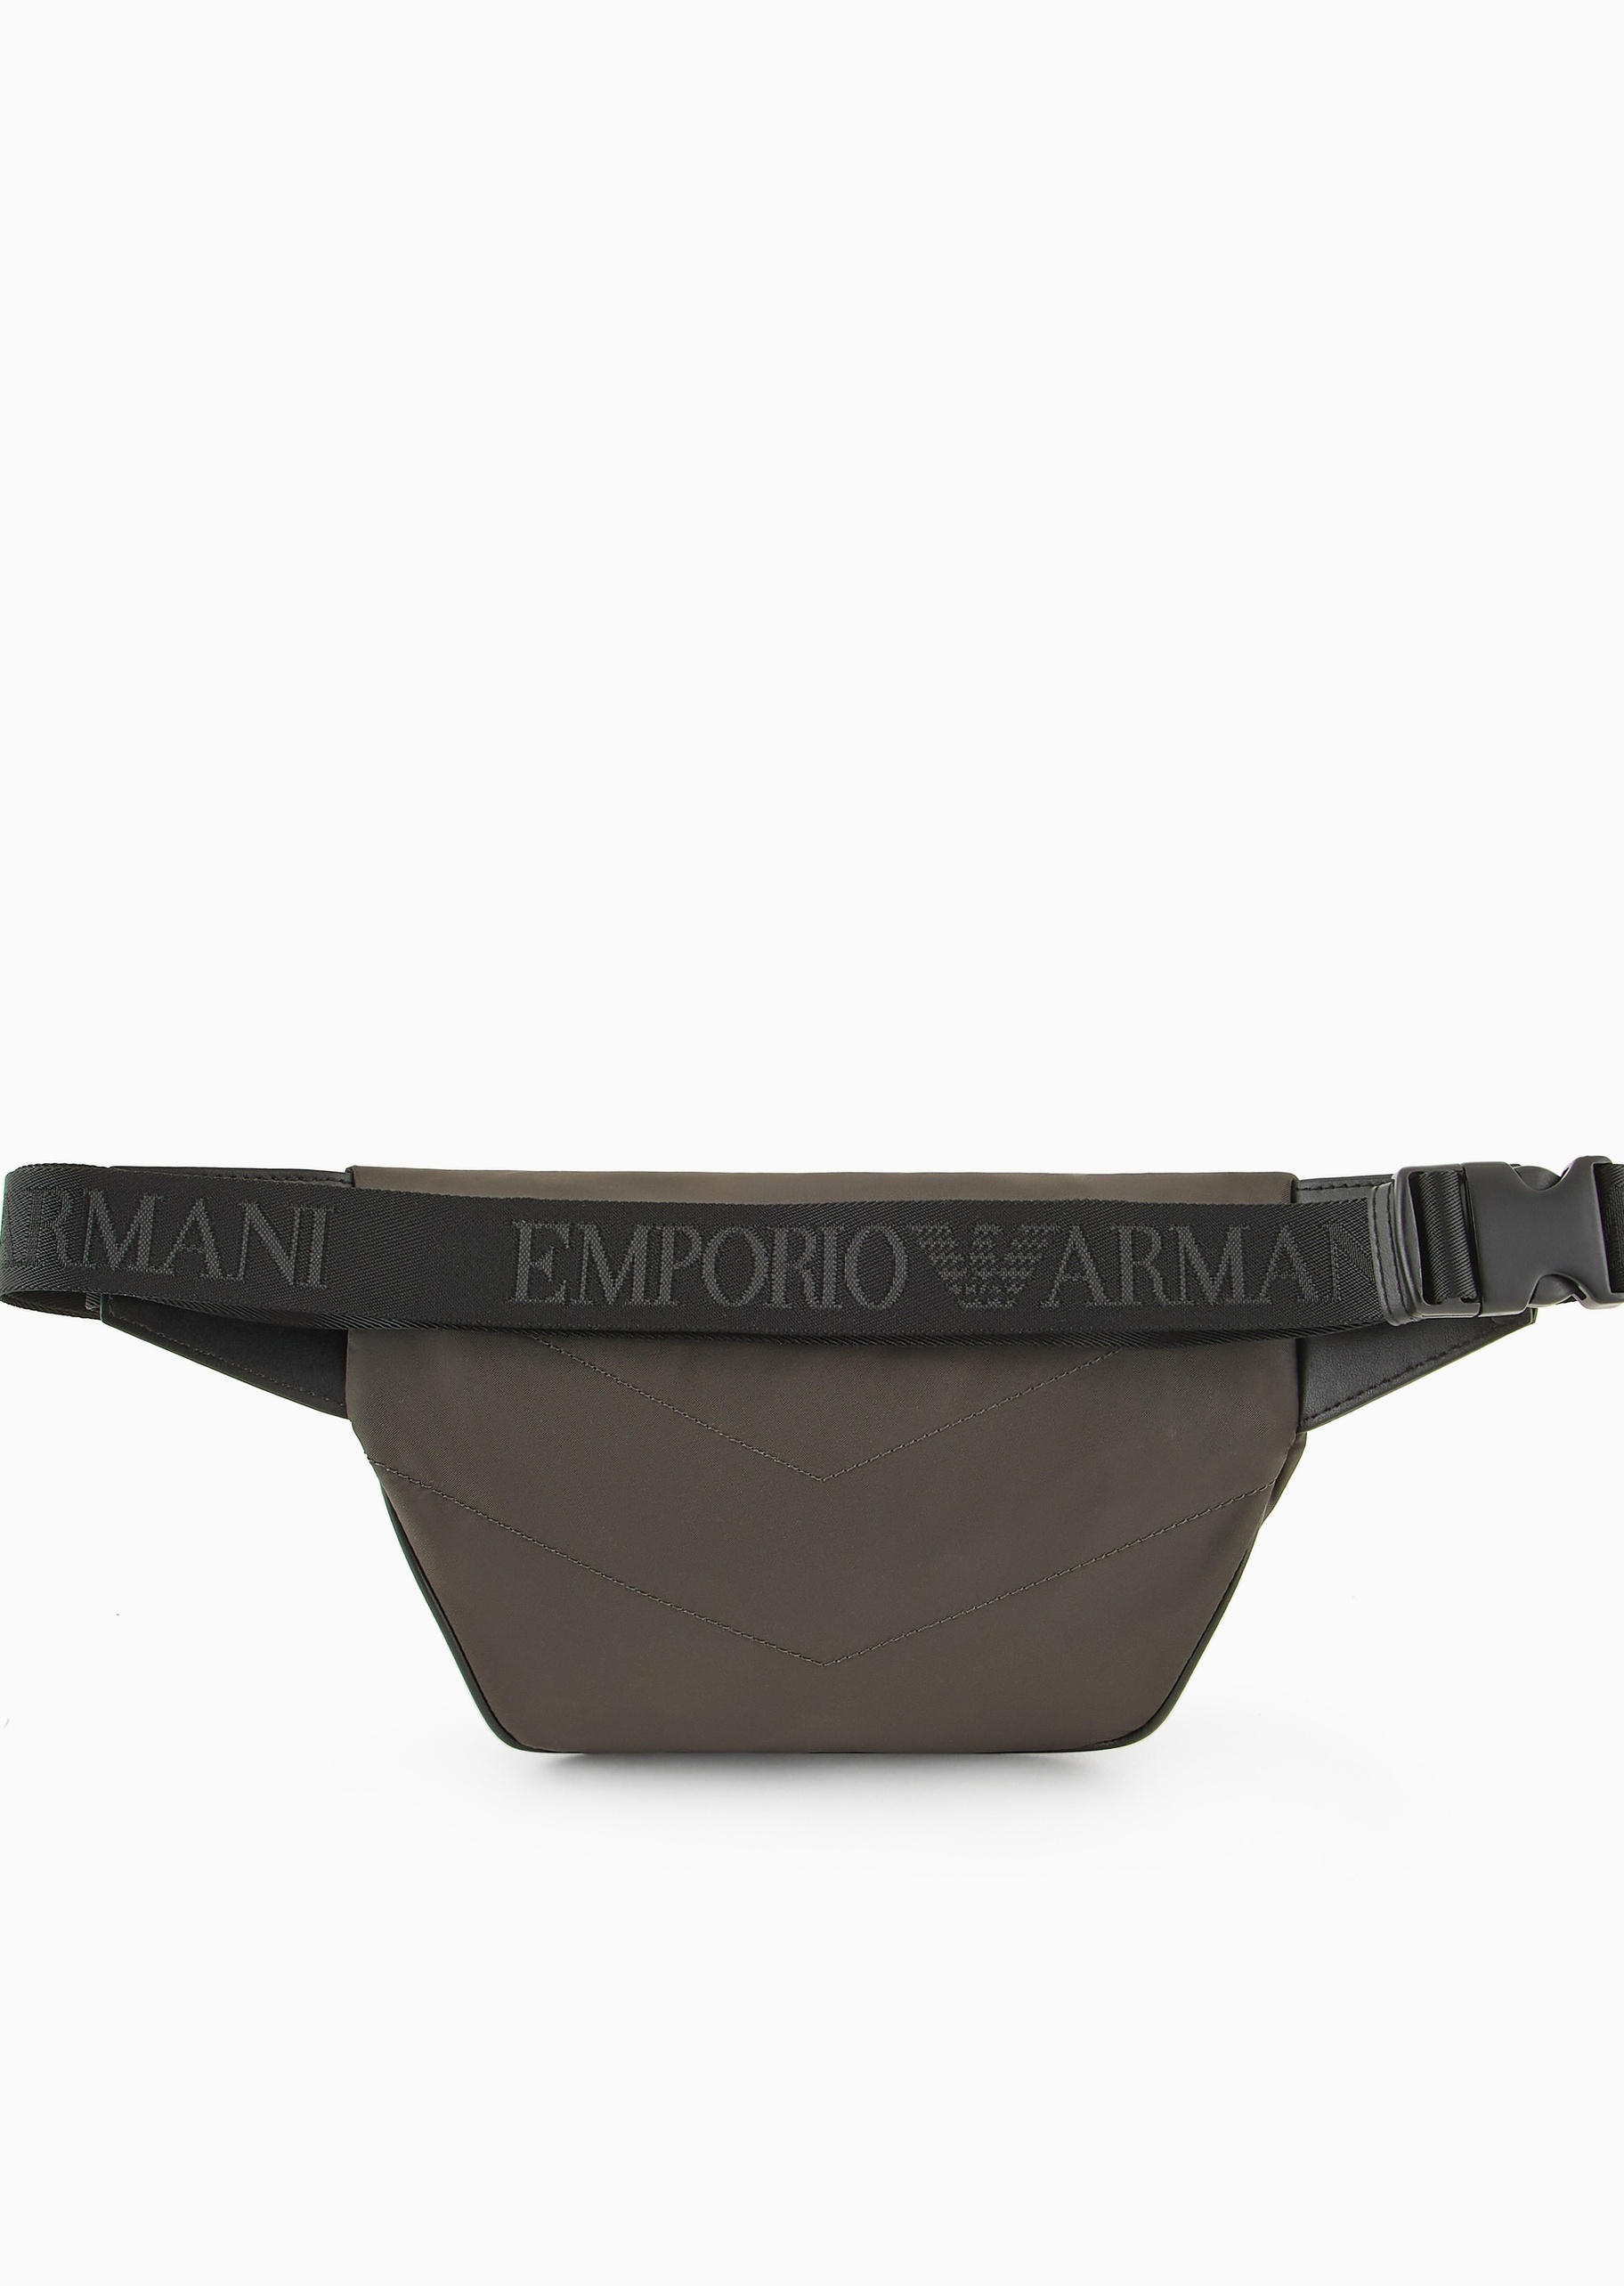 Emporio Armani 男士拉链可调节插扣肩带斜挎腰包